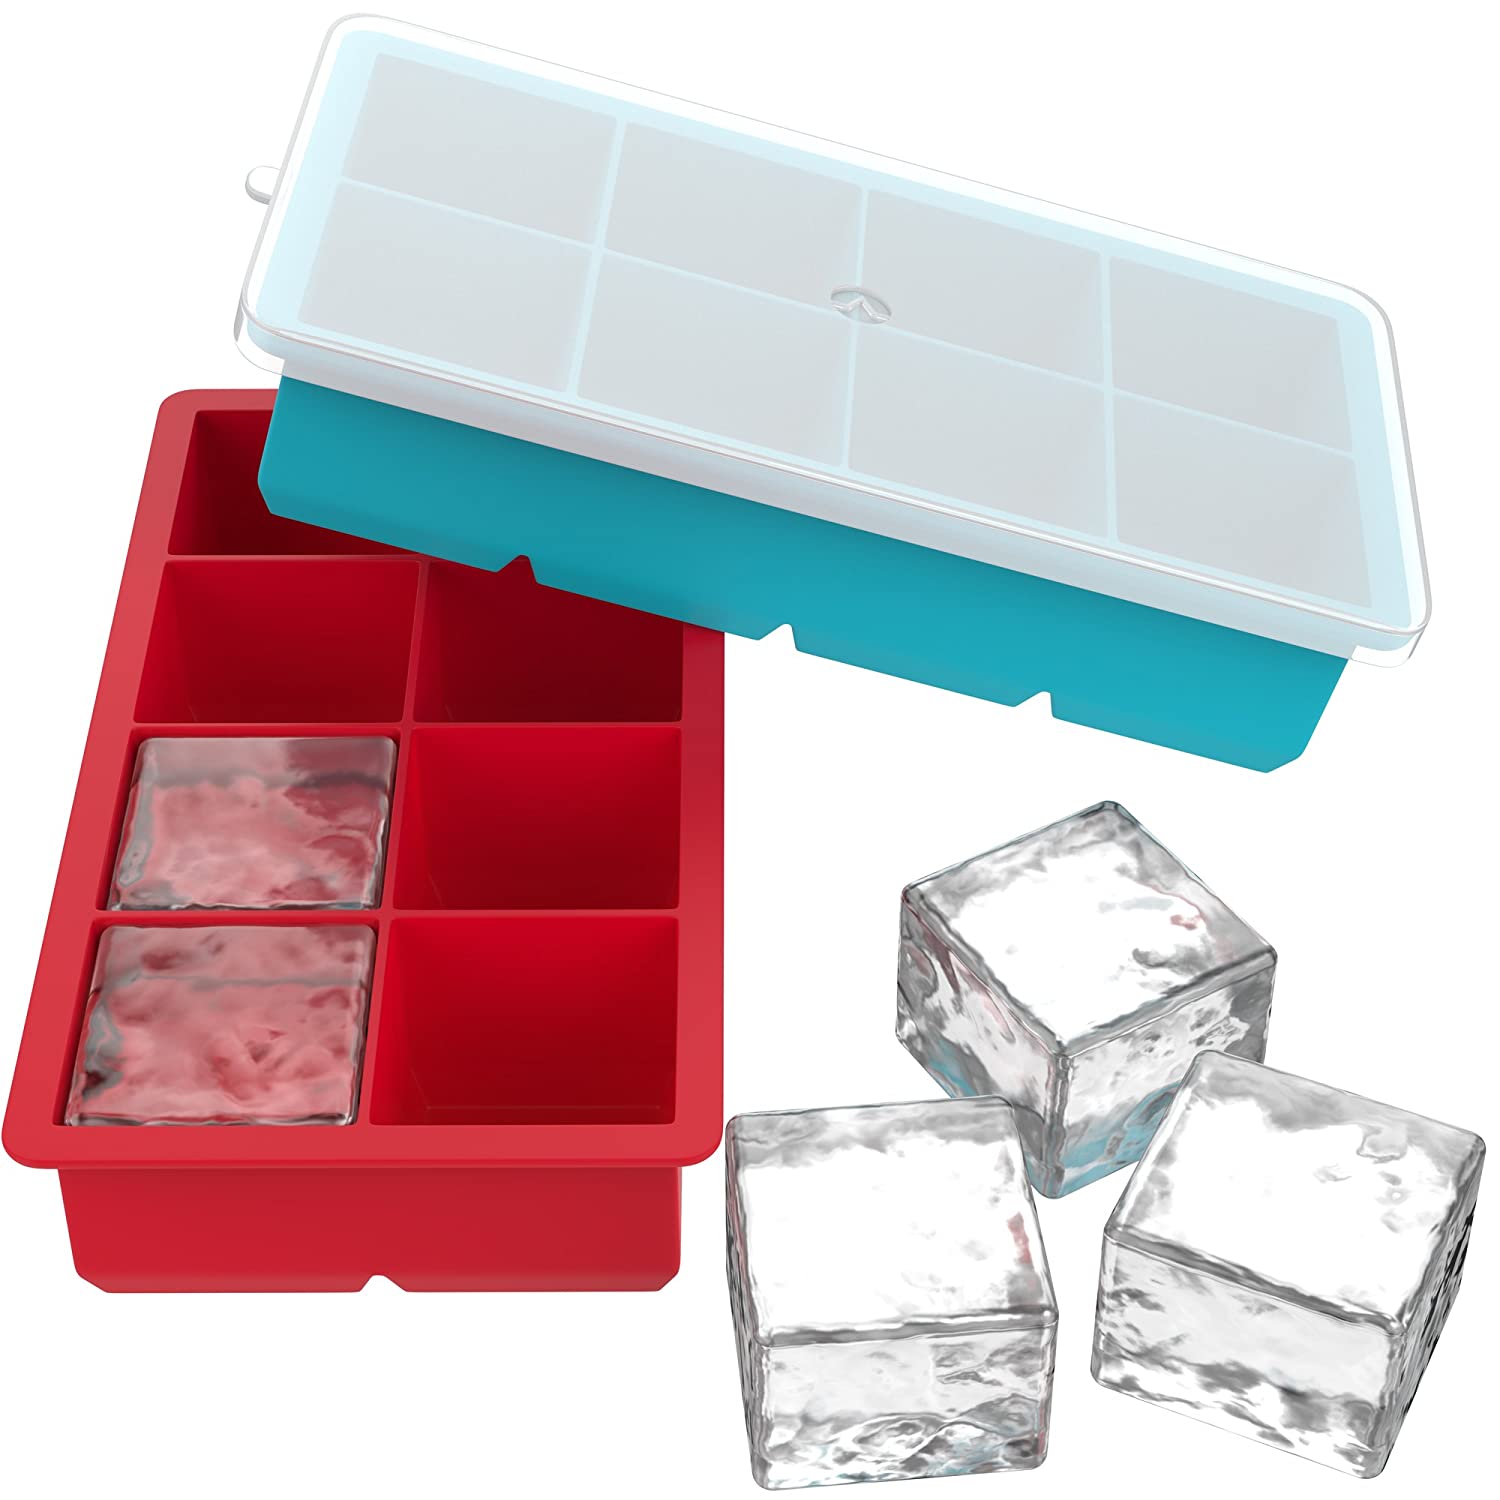 Ice cube tray Meilleur pour lEau Cocktails Whisky et Autres Boissons 4 Pack Migimi 60 Cubes Moules à Glace en Silicone Bac à Glaçons 